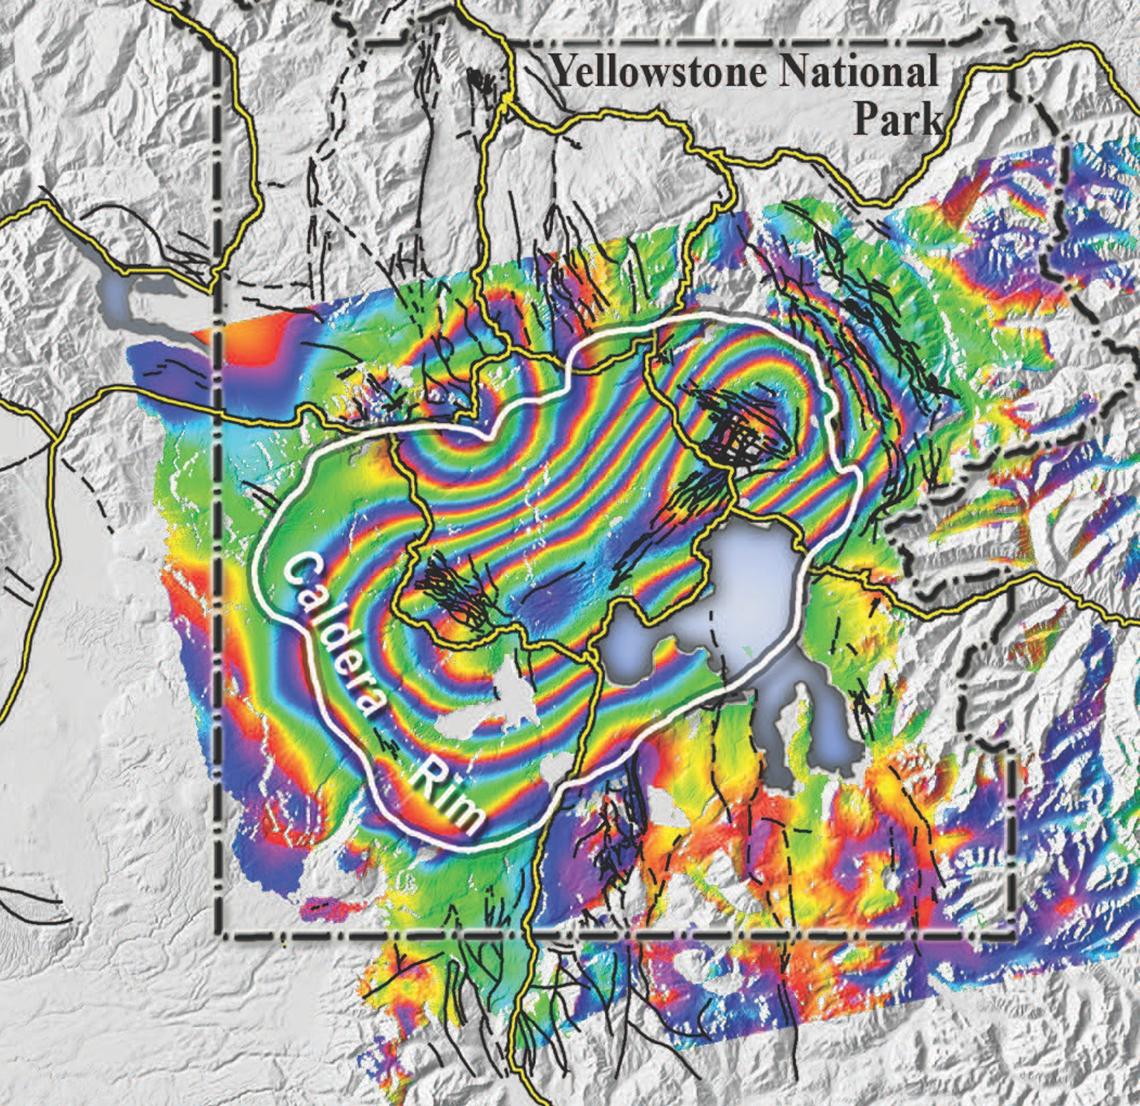 黄石火山地震报告发布:火山喷发迫在眉睫?